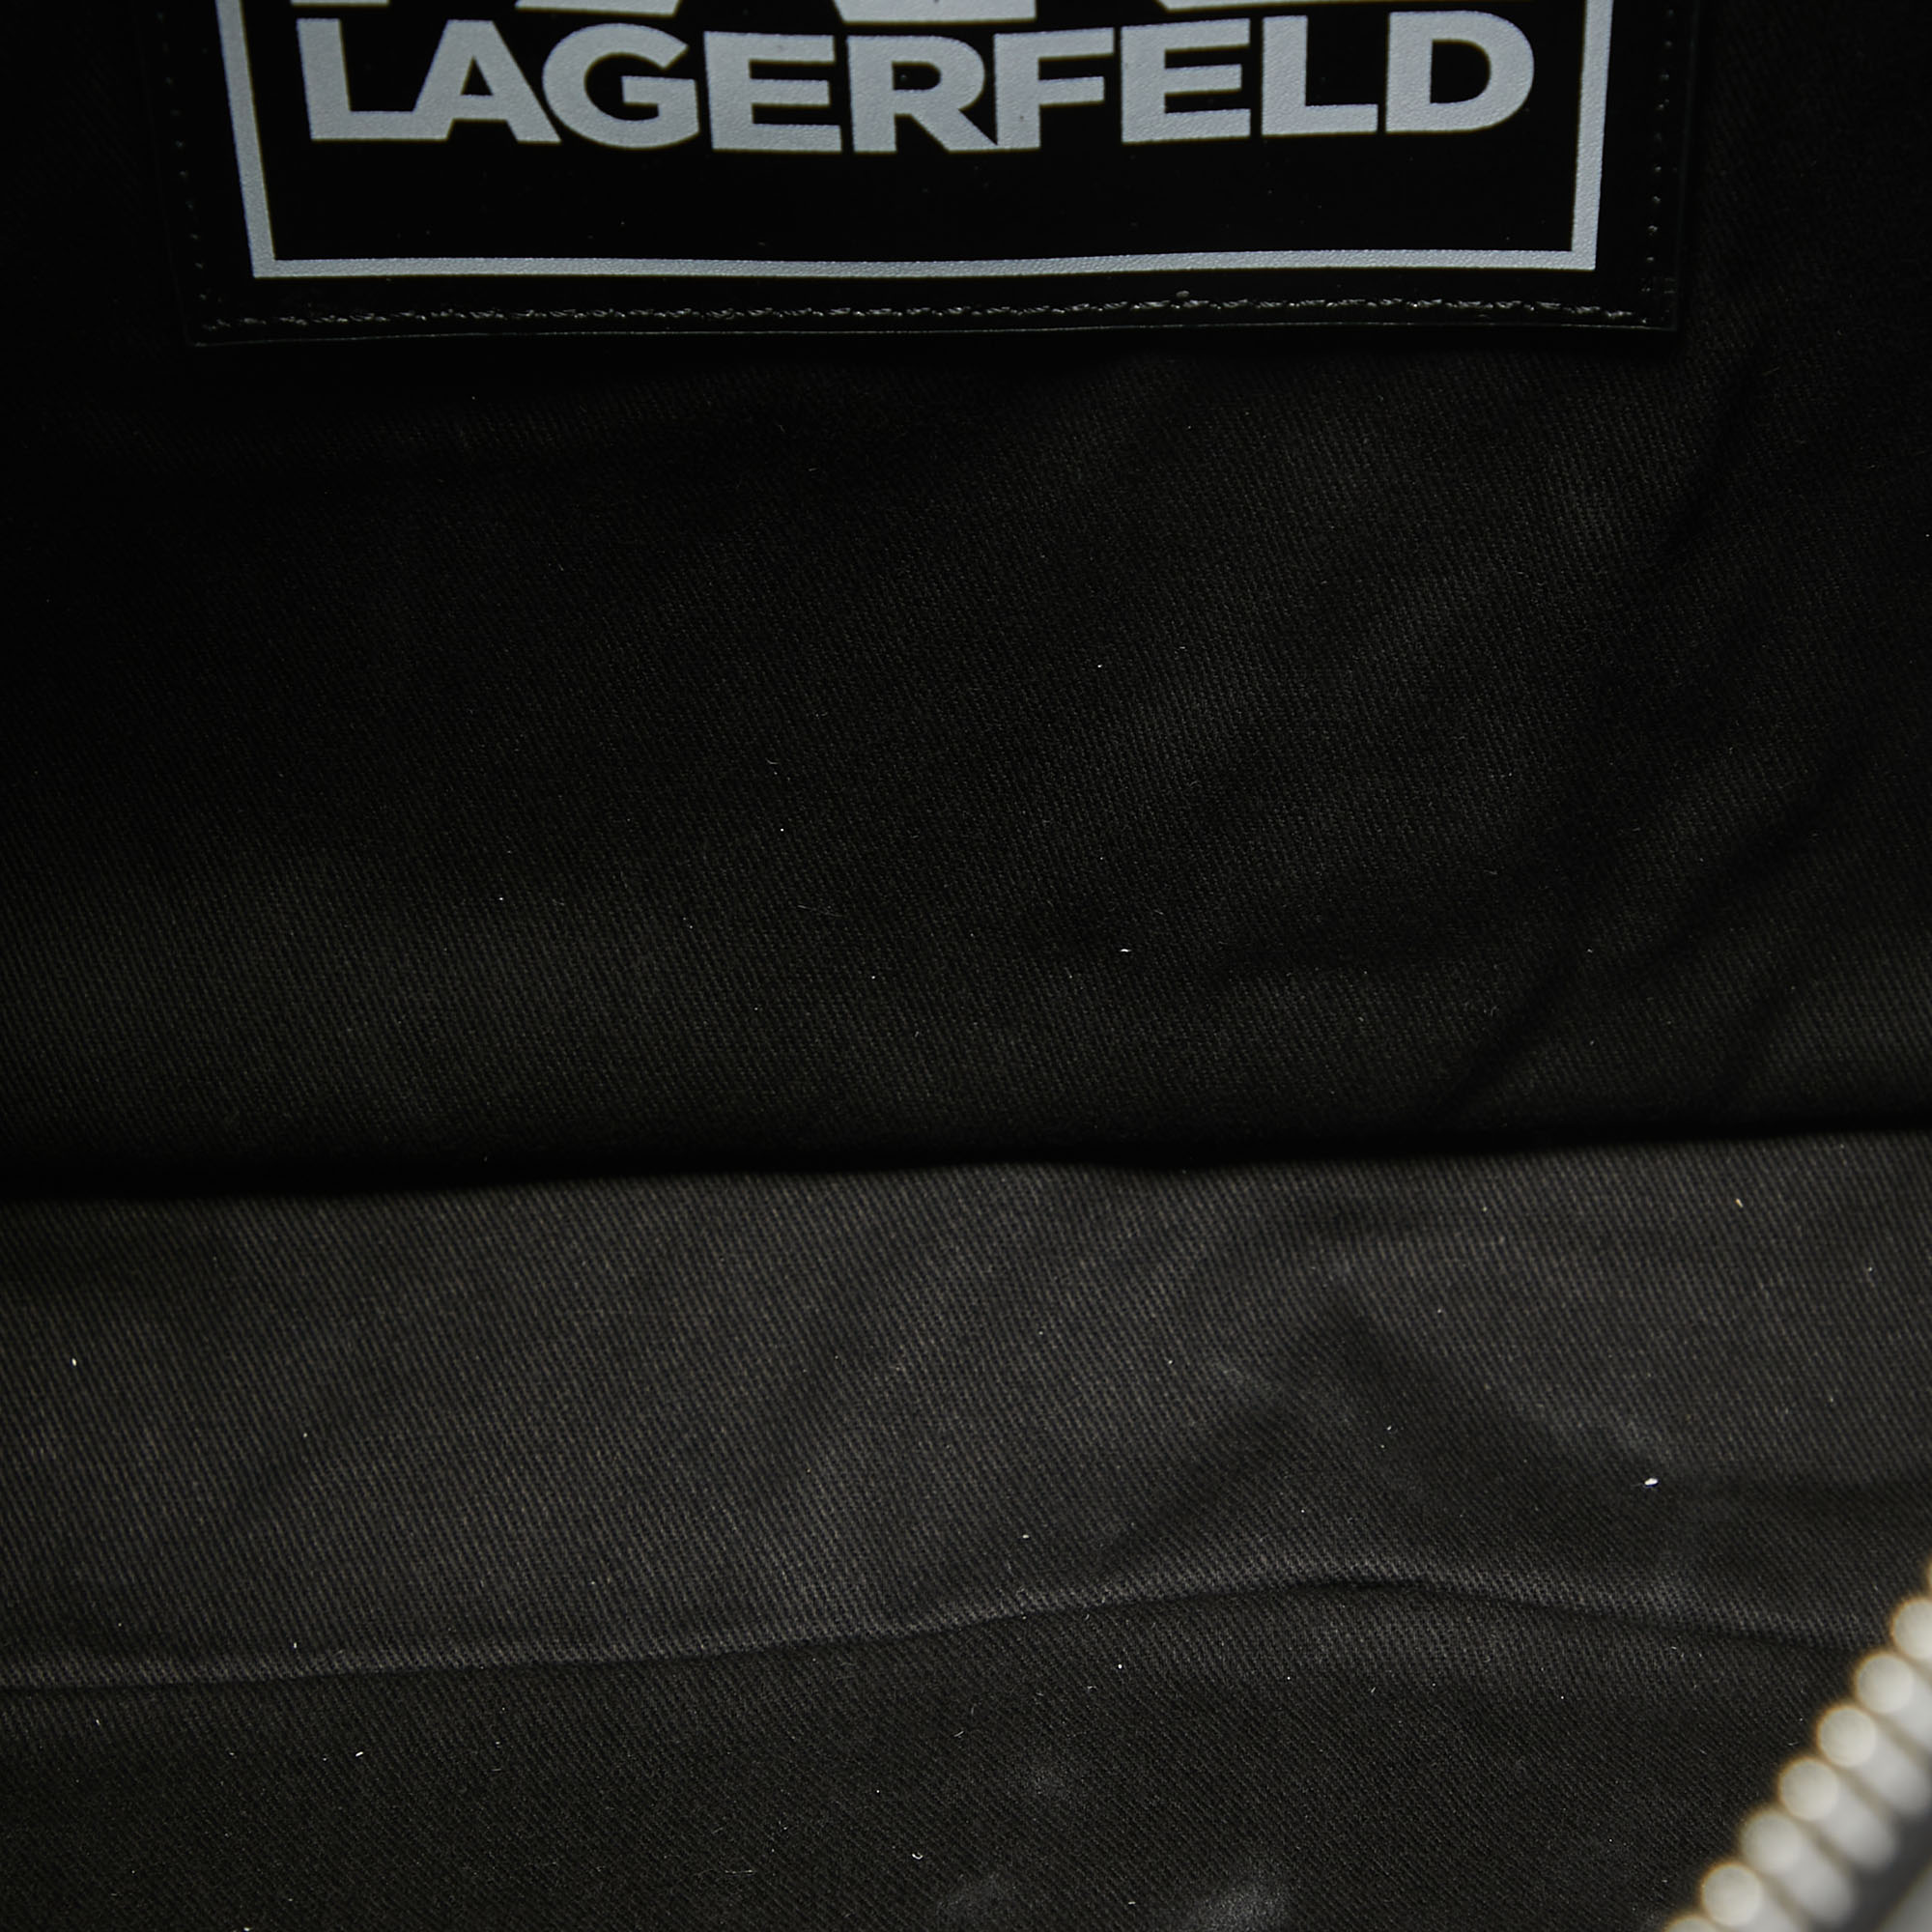 Karl Lagerfeld Black Leather K/Loom Briefcase